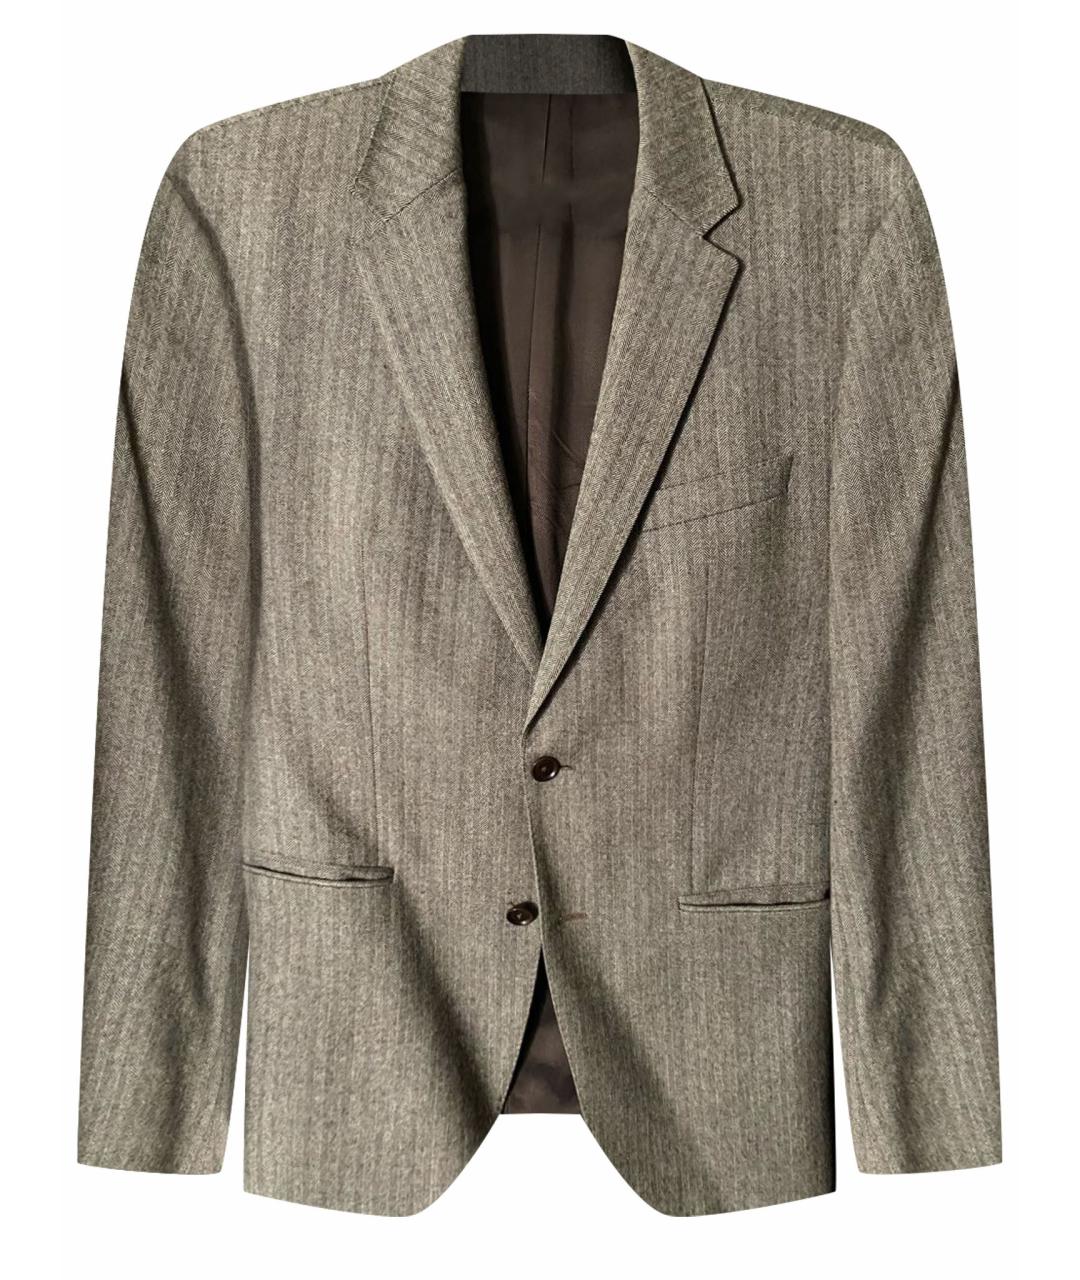 HUGO BOSS Коричневый шерстяной пиджак, фото 1